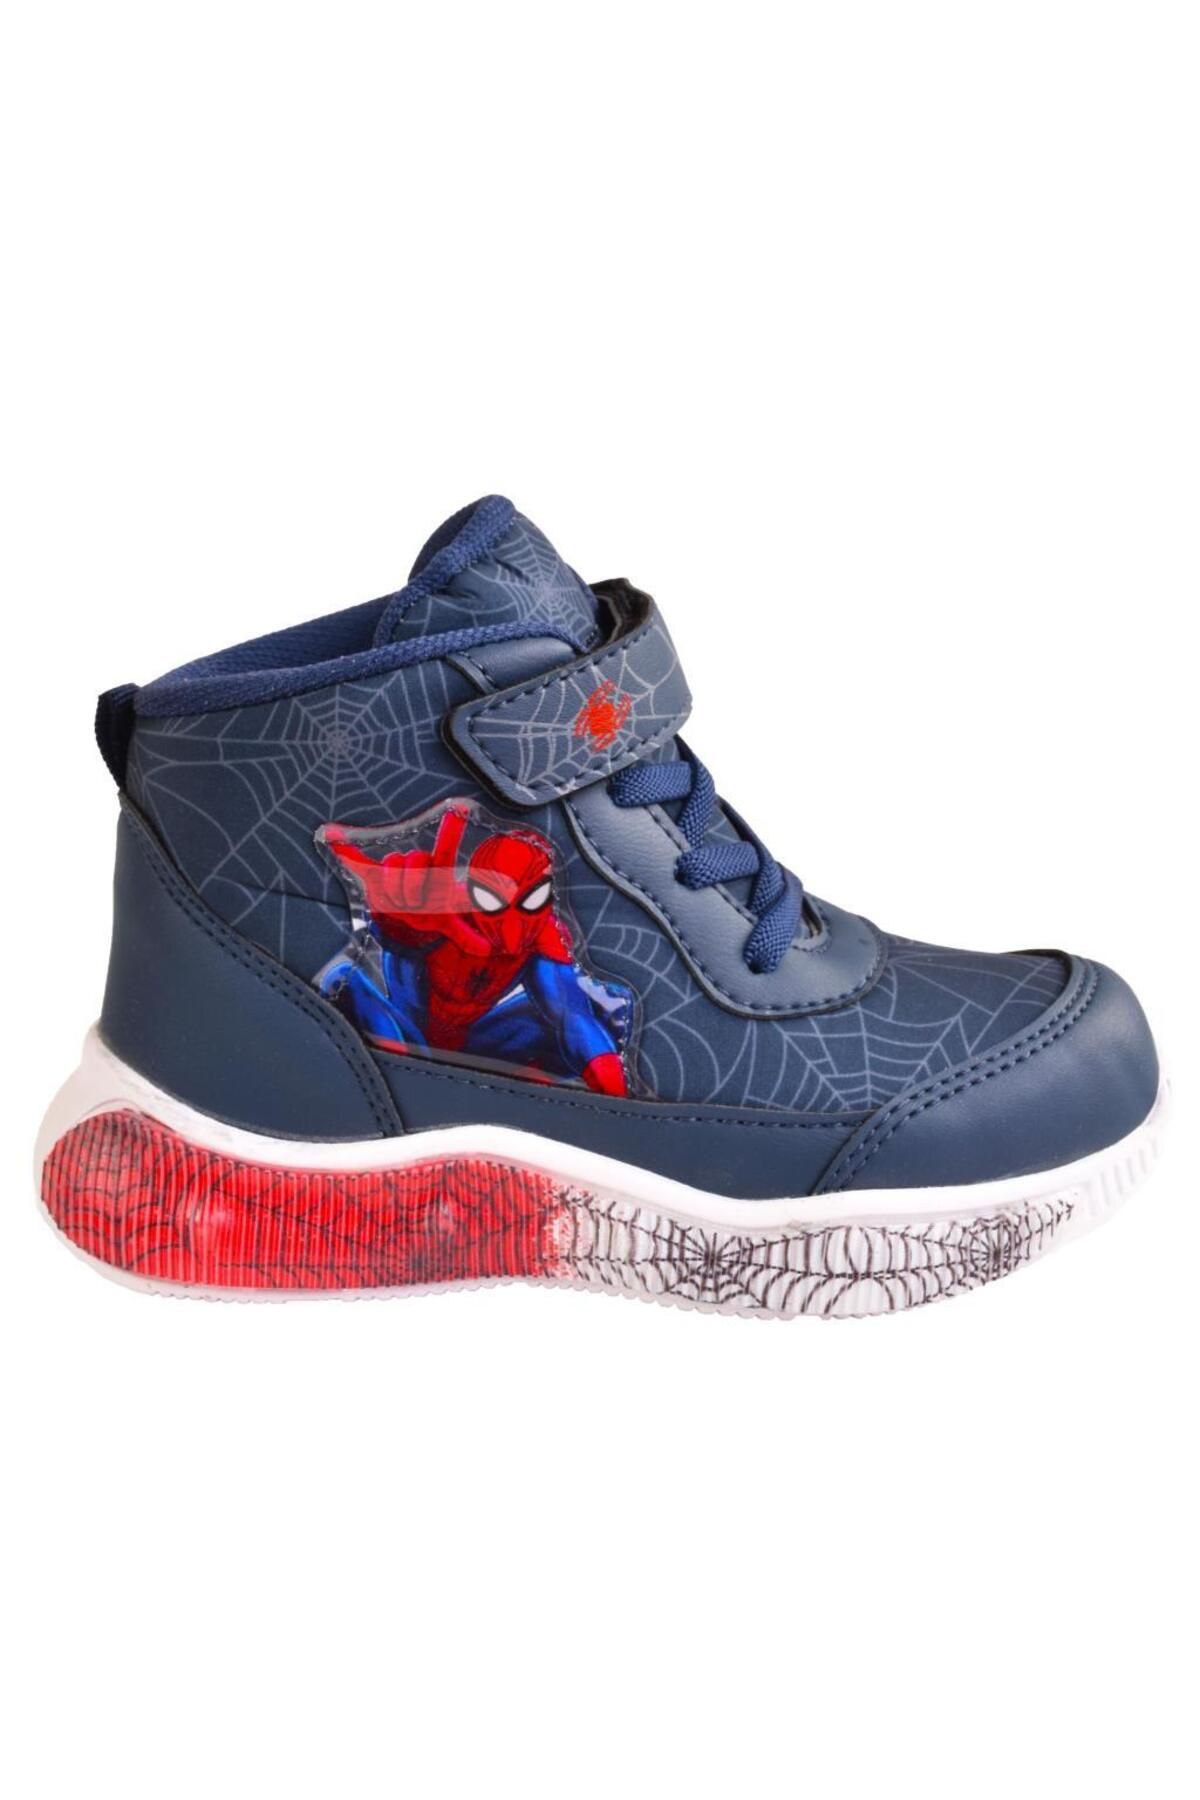 Spiderman Erkek Çocuk Işıklı Siyah&lacivert Kaymaz Taban Içi Polarlı Spor Ayakkabı / Ellaboni Hafif Spor Bot&b